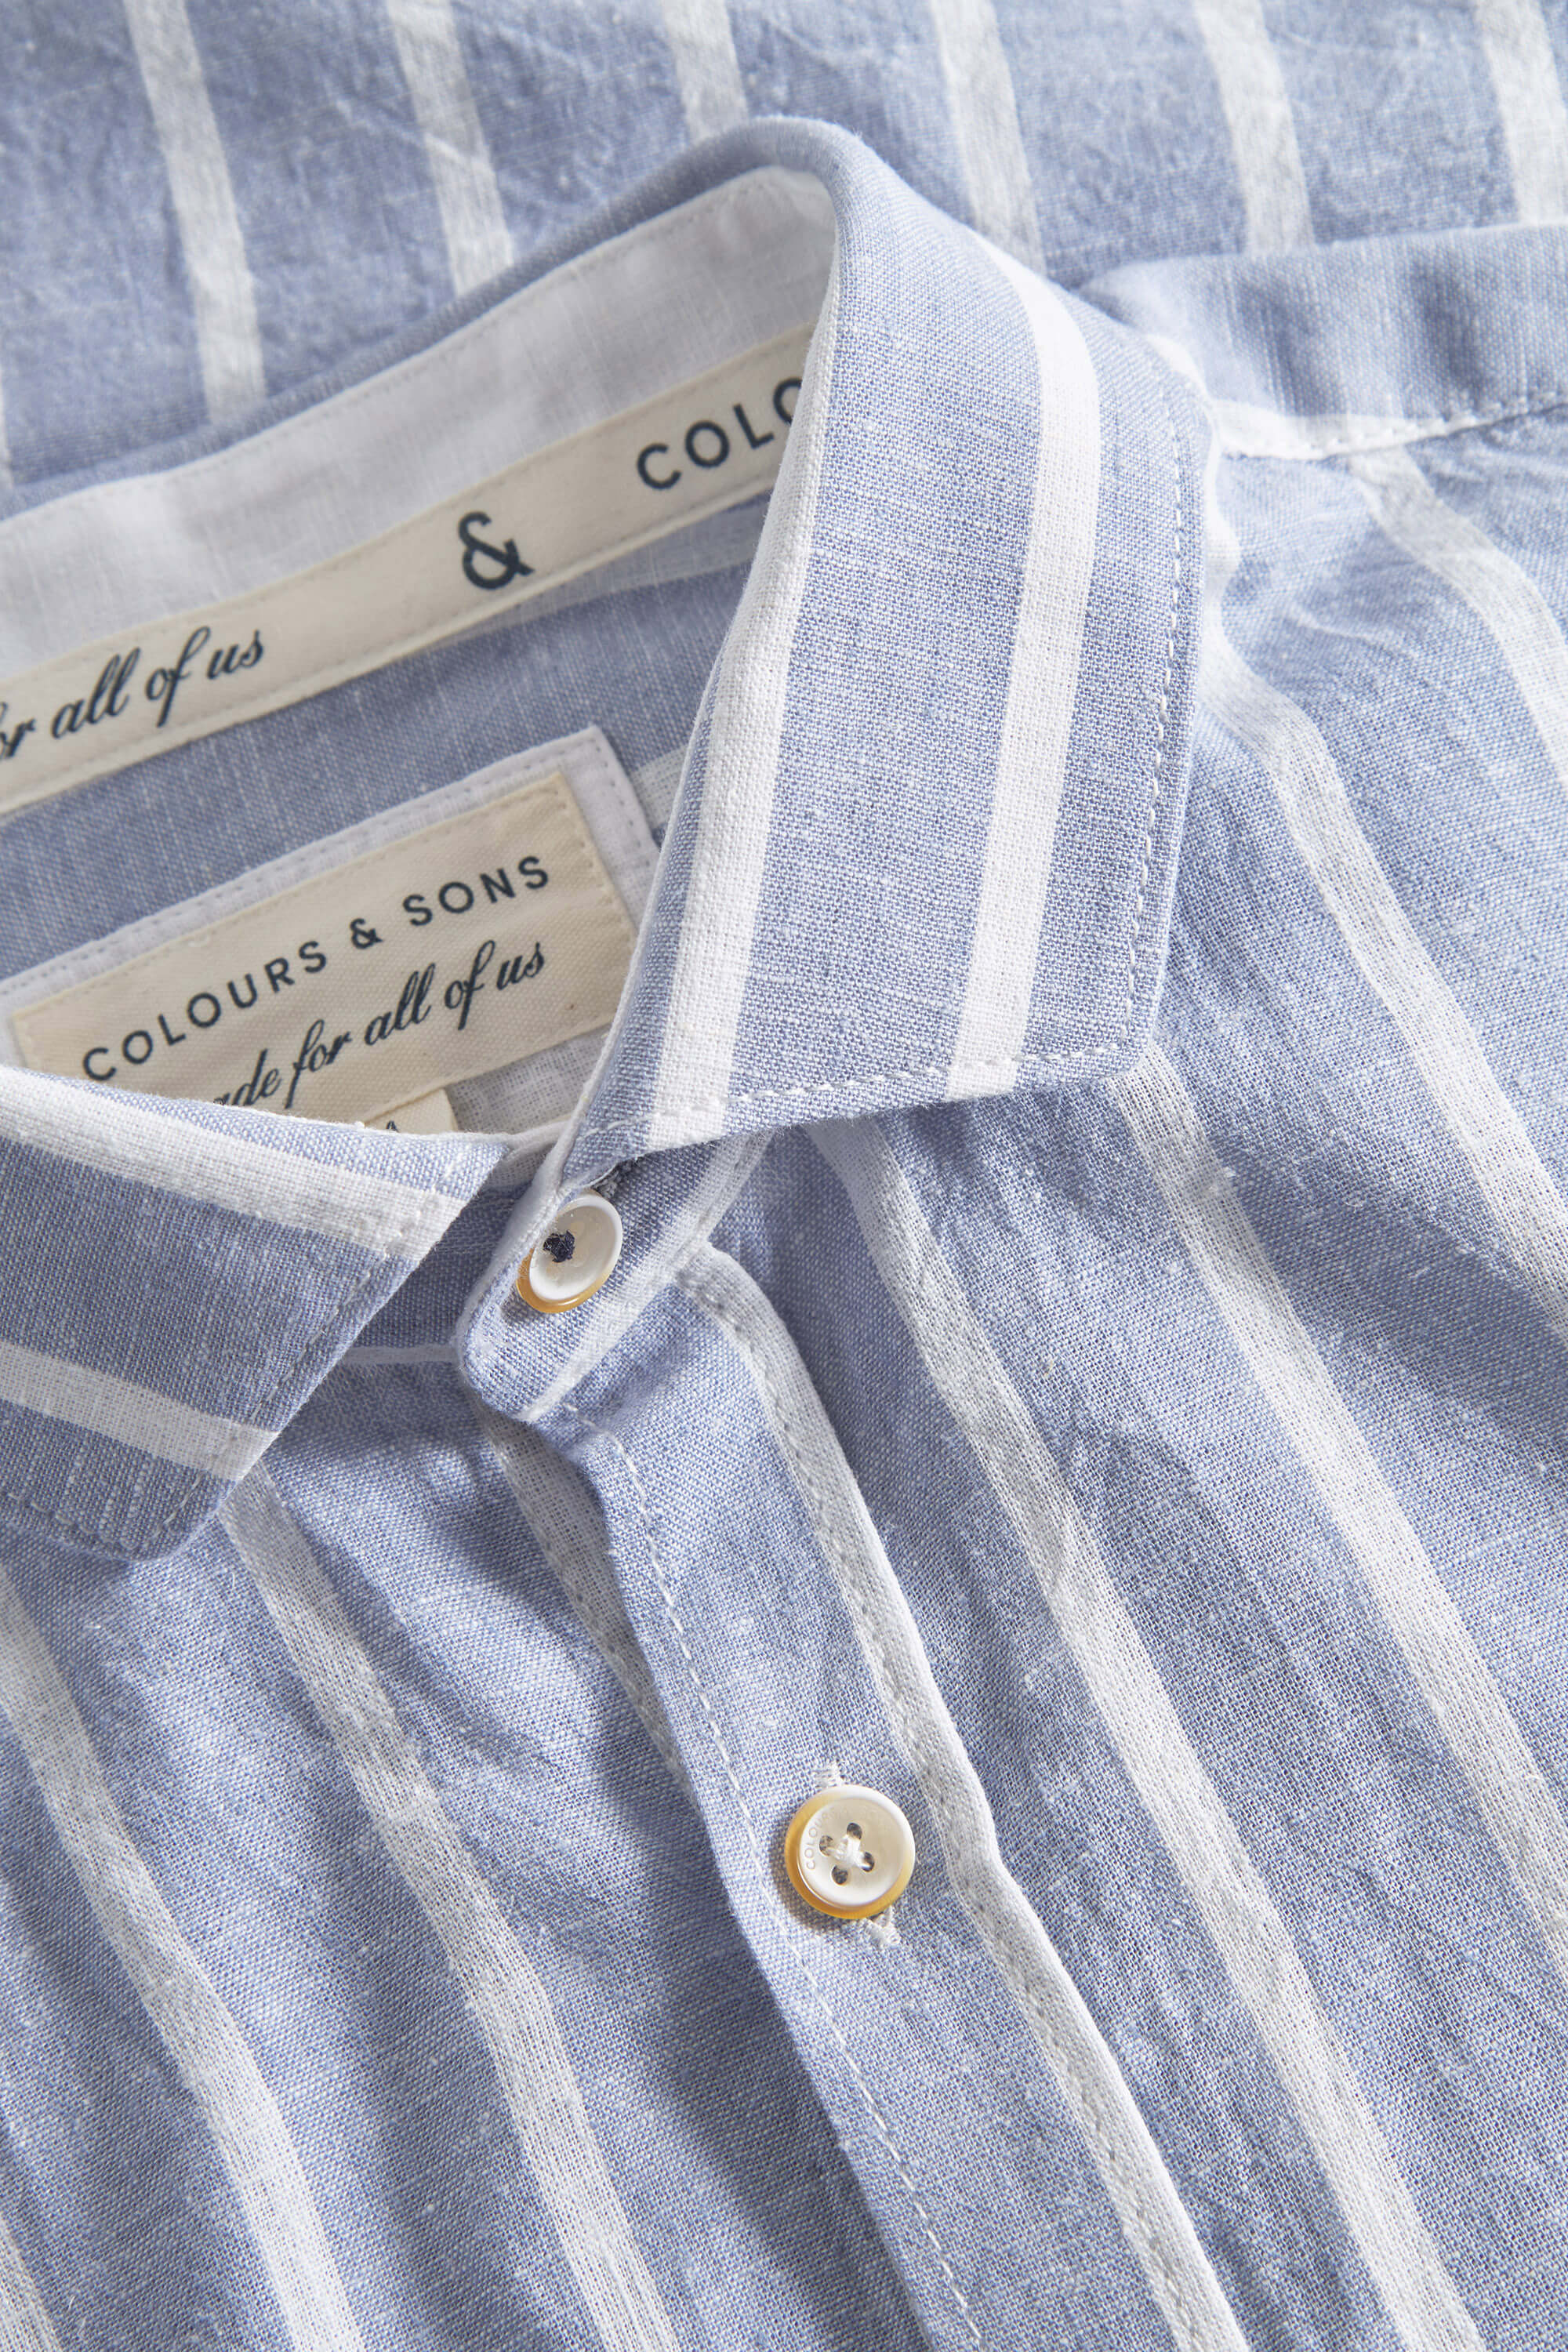 Herren Hemd, hellblau, 70% Baumwolle 30% Leinen von Colours & Sons